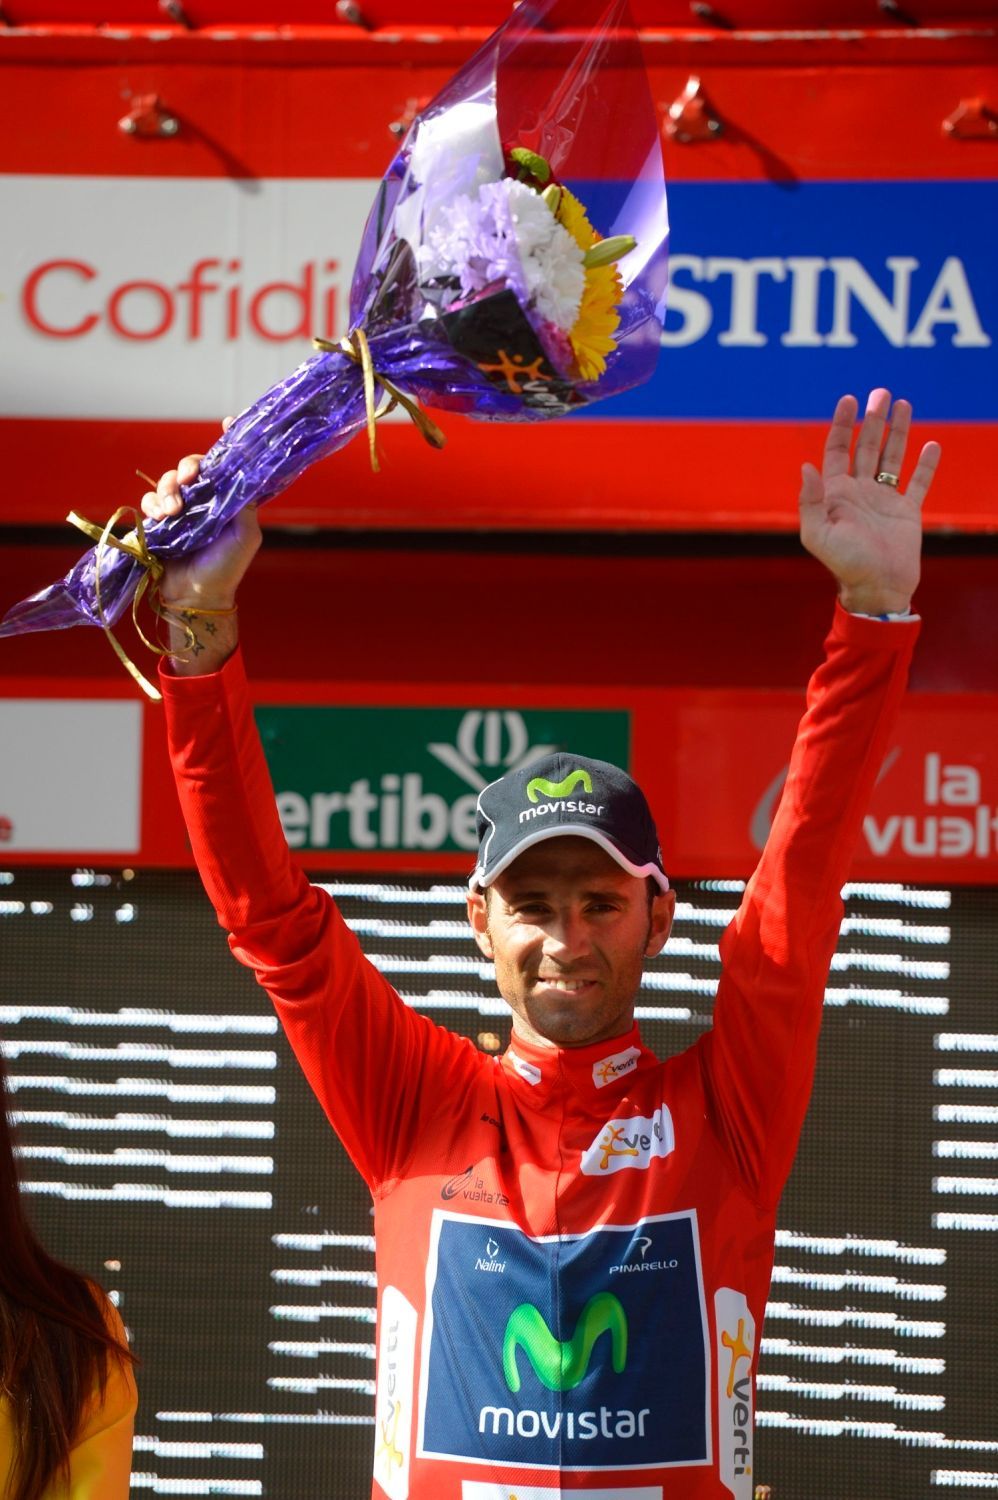 Španělský cyklista Alejandro Valverde ze stáje Movistar slaví vítězství ve 3. etapě Vuelty 2012.